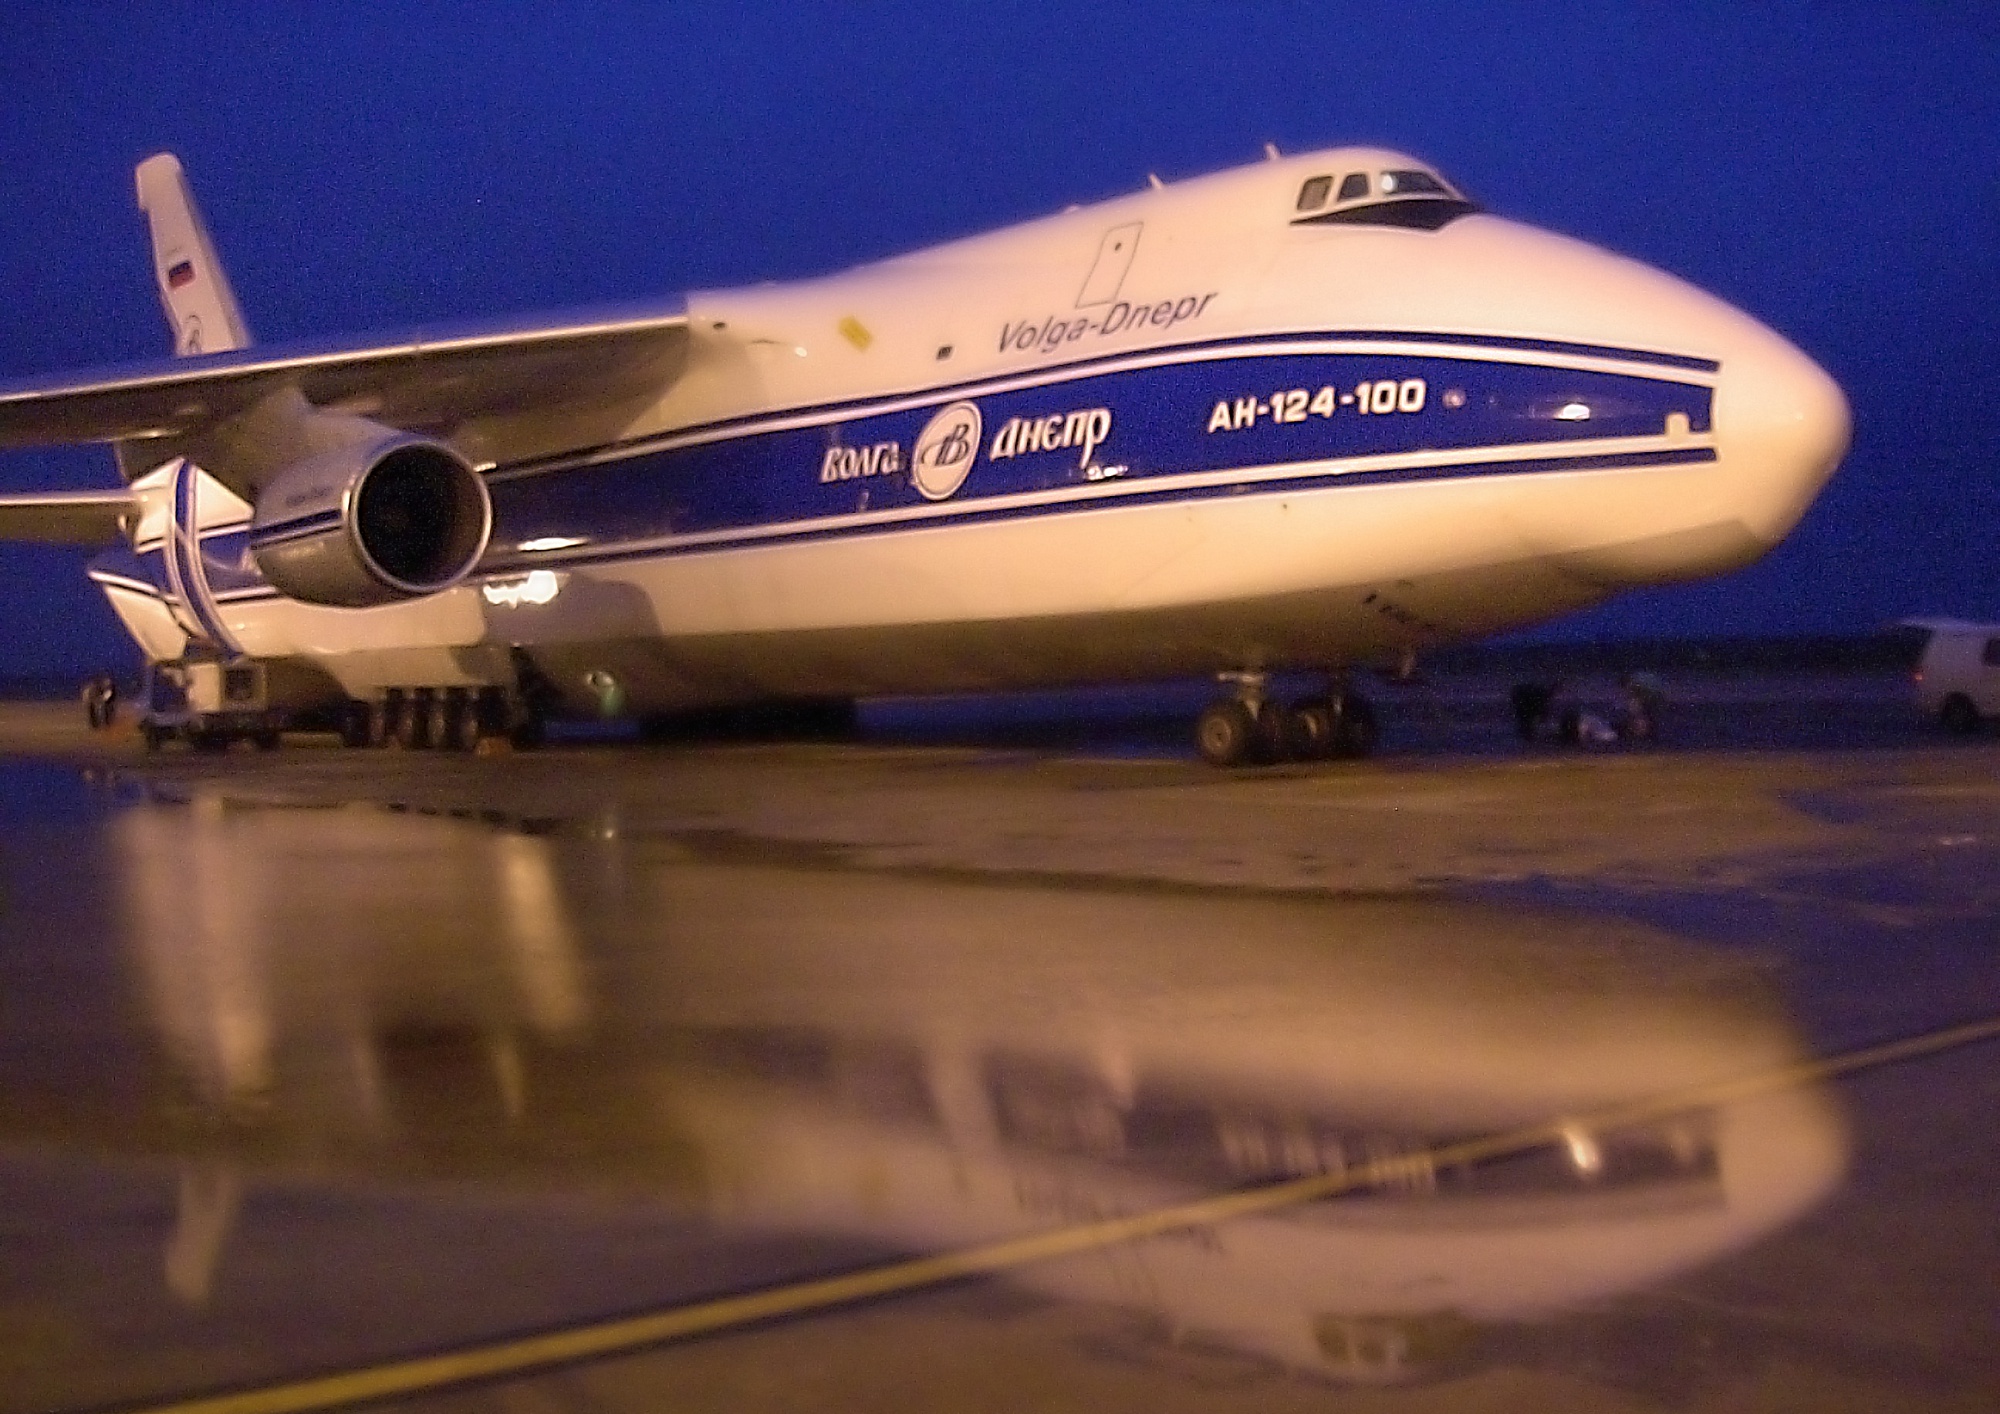 Meg kell hosszabbítani az orosz színekben repülő gépek engedélyét (fotók: Volga-Dnepr)